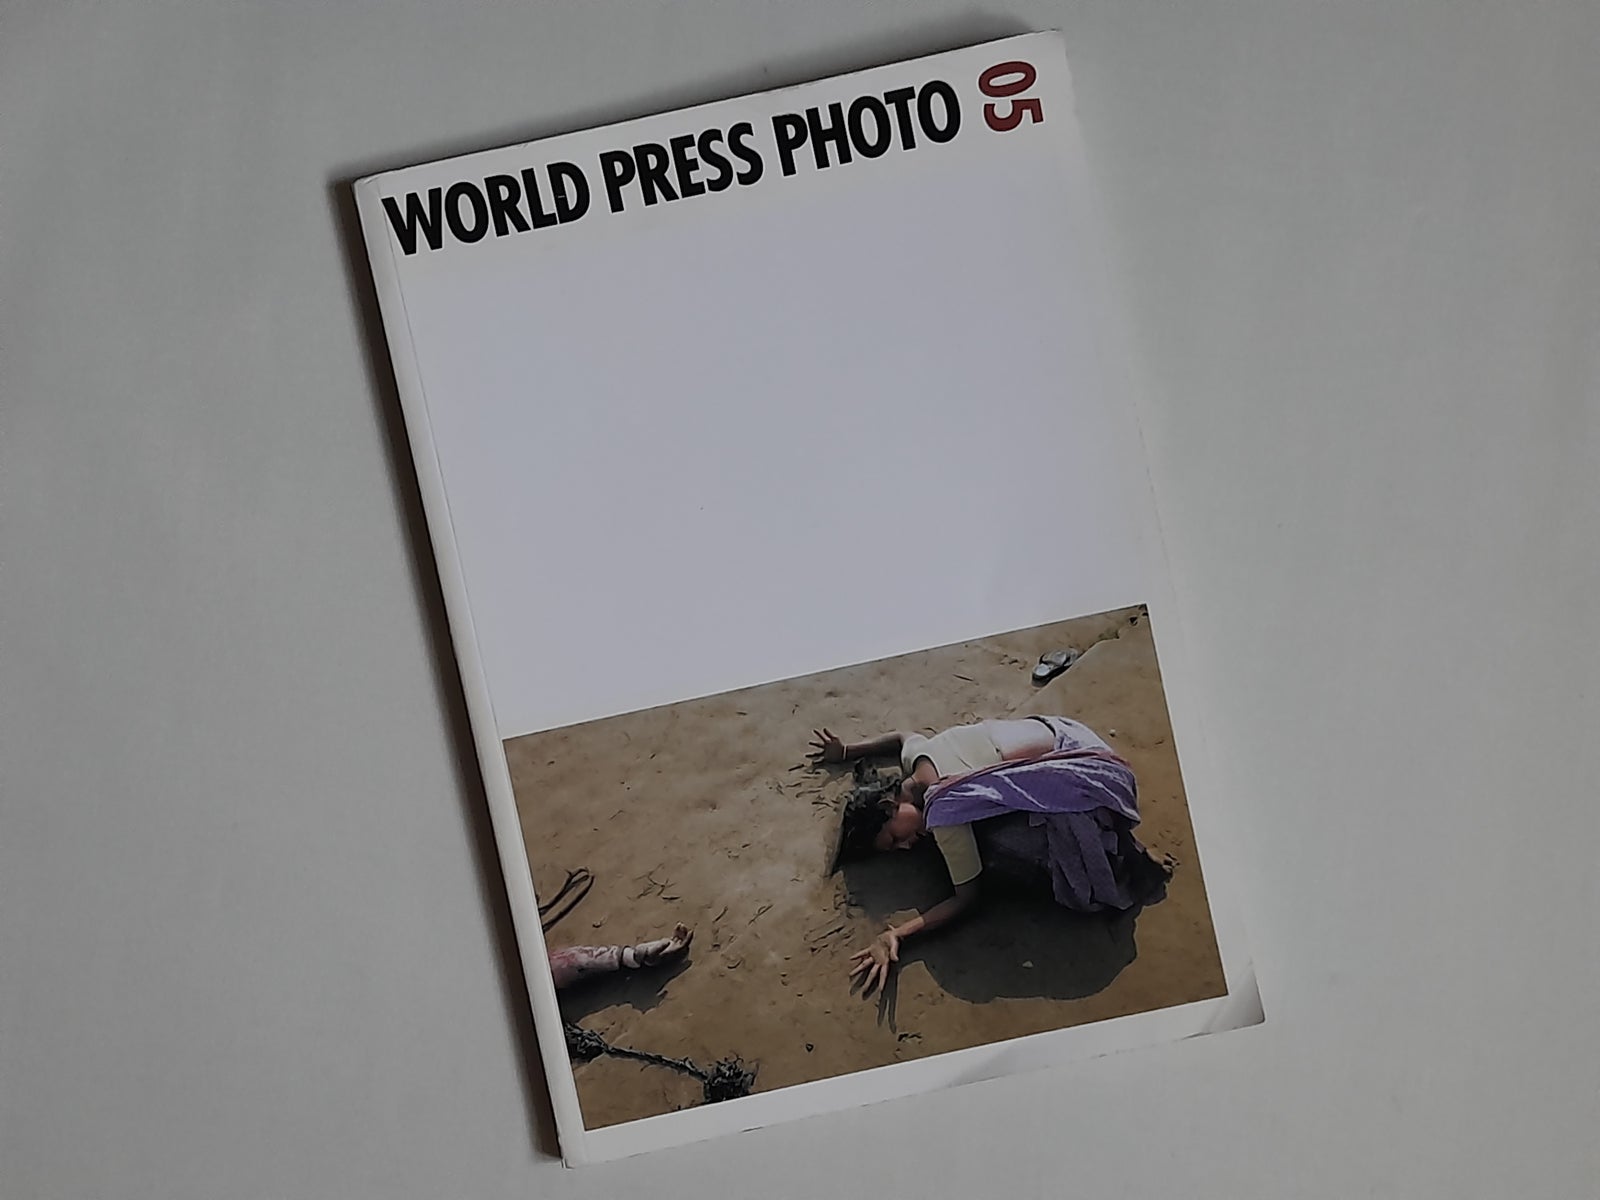 Canon, WORLD PRESS PHOTO